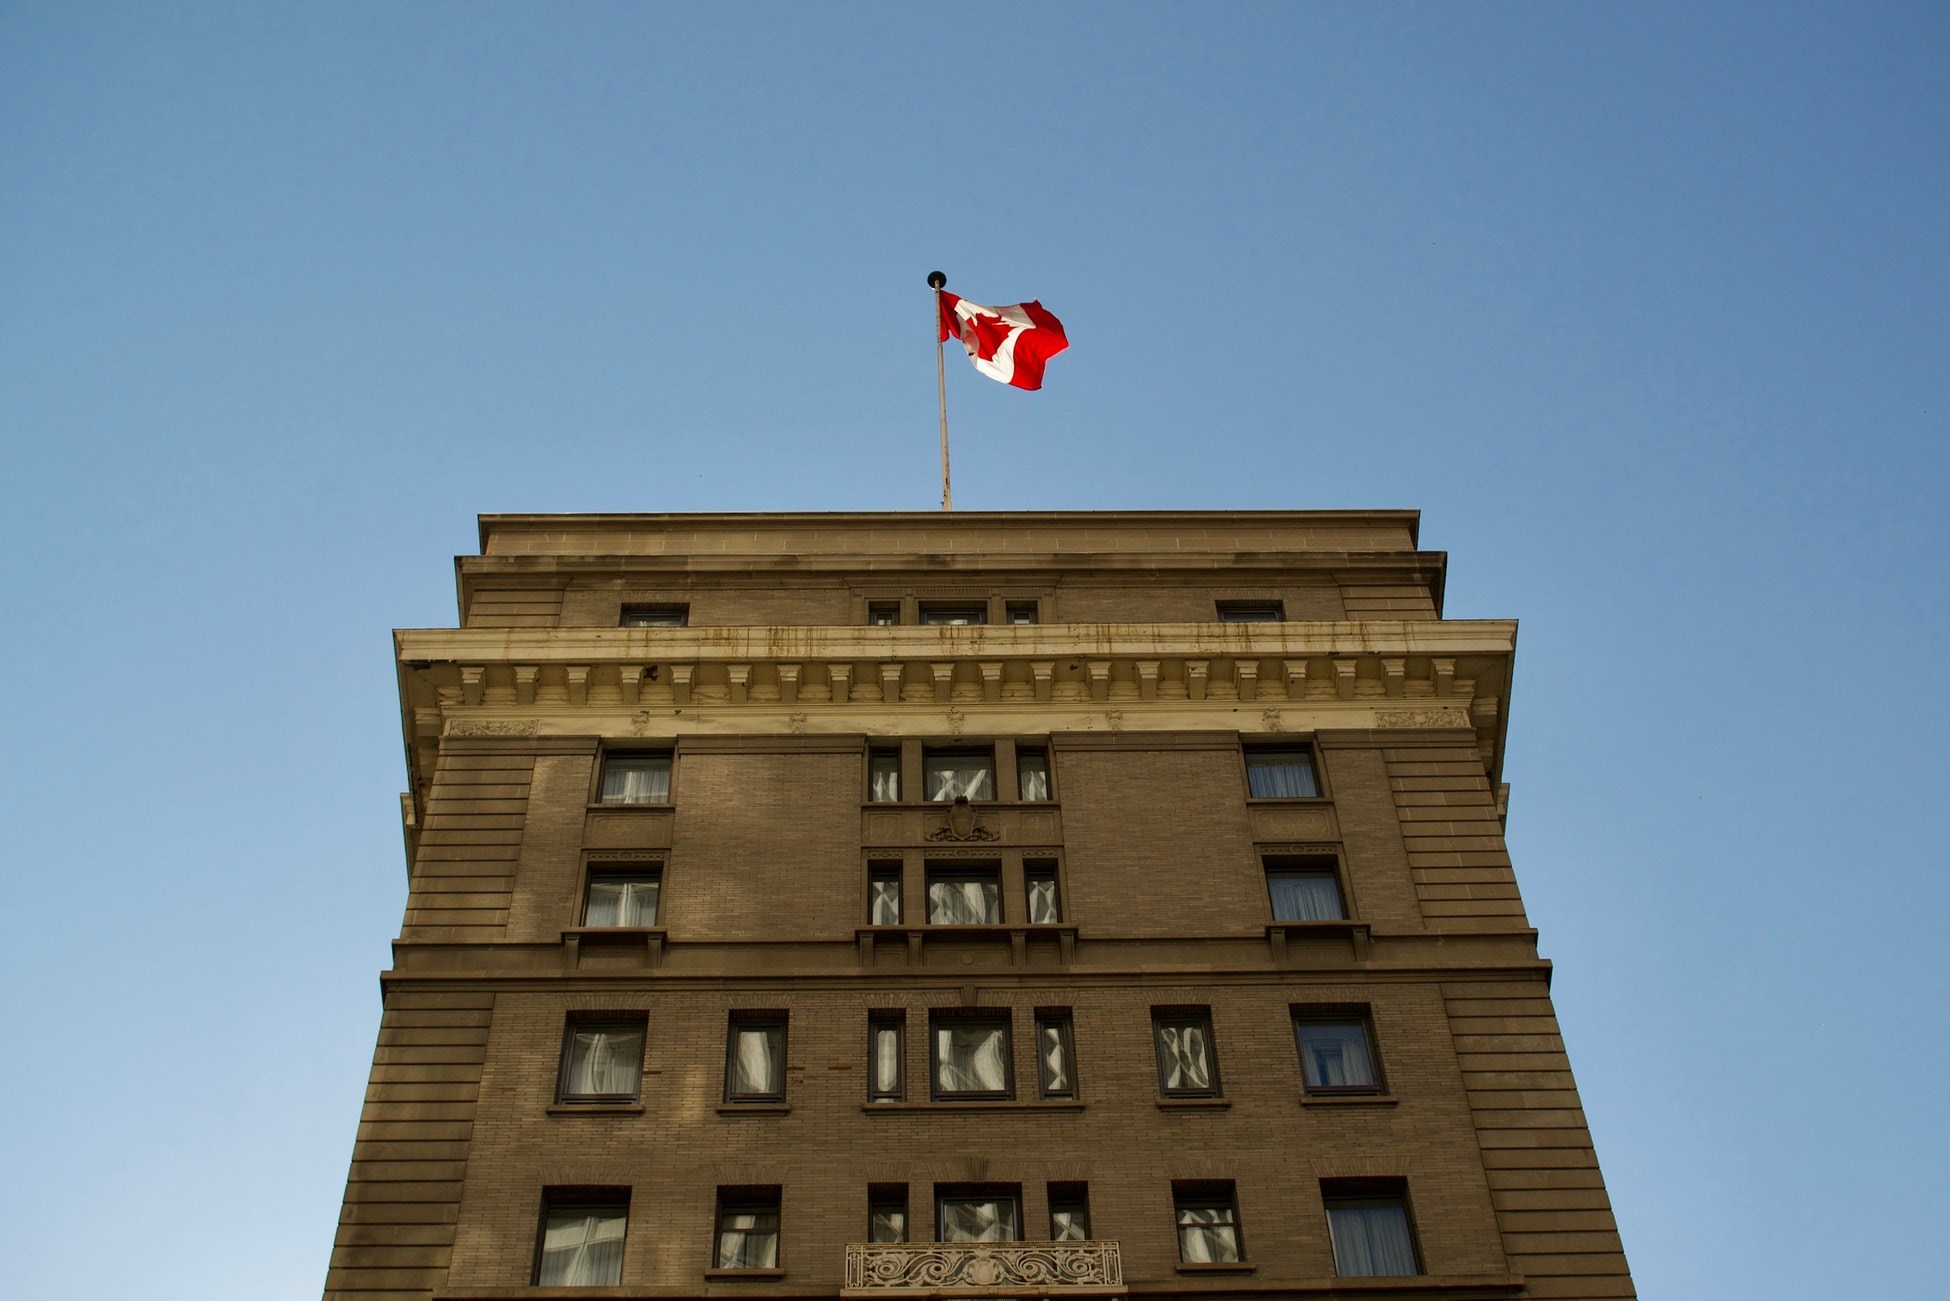 Remarkable Rebound for Canadian Investors